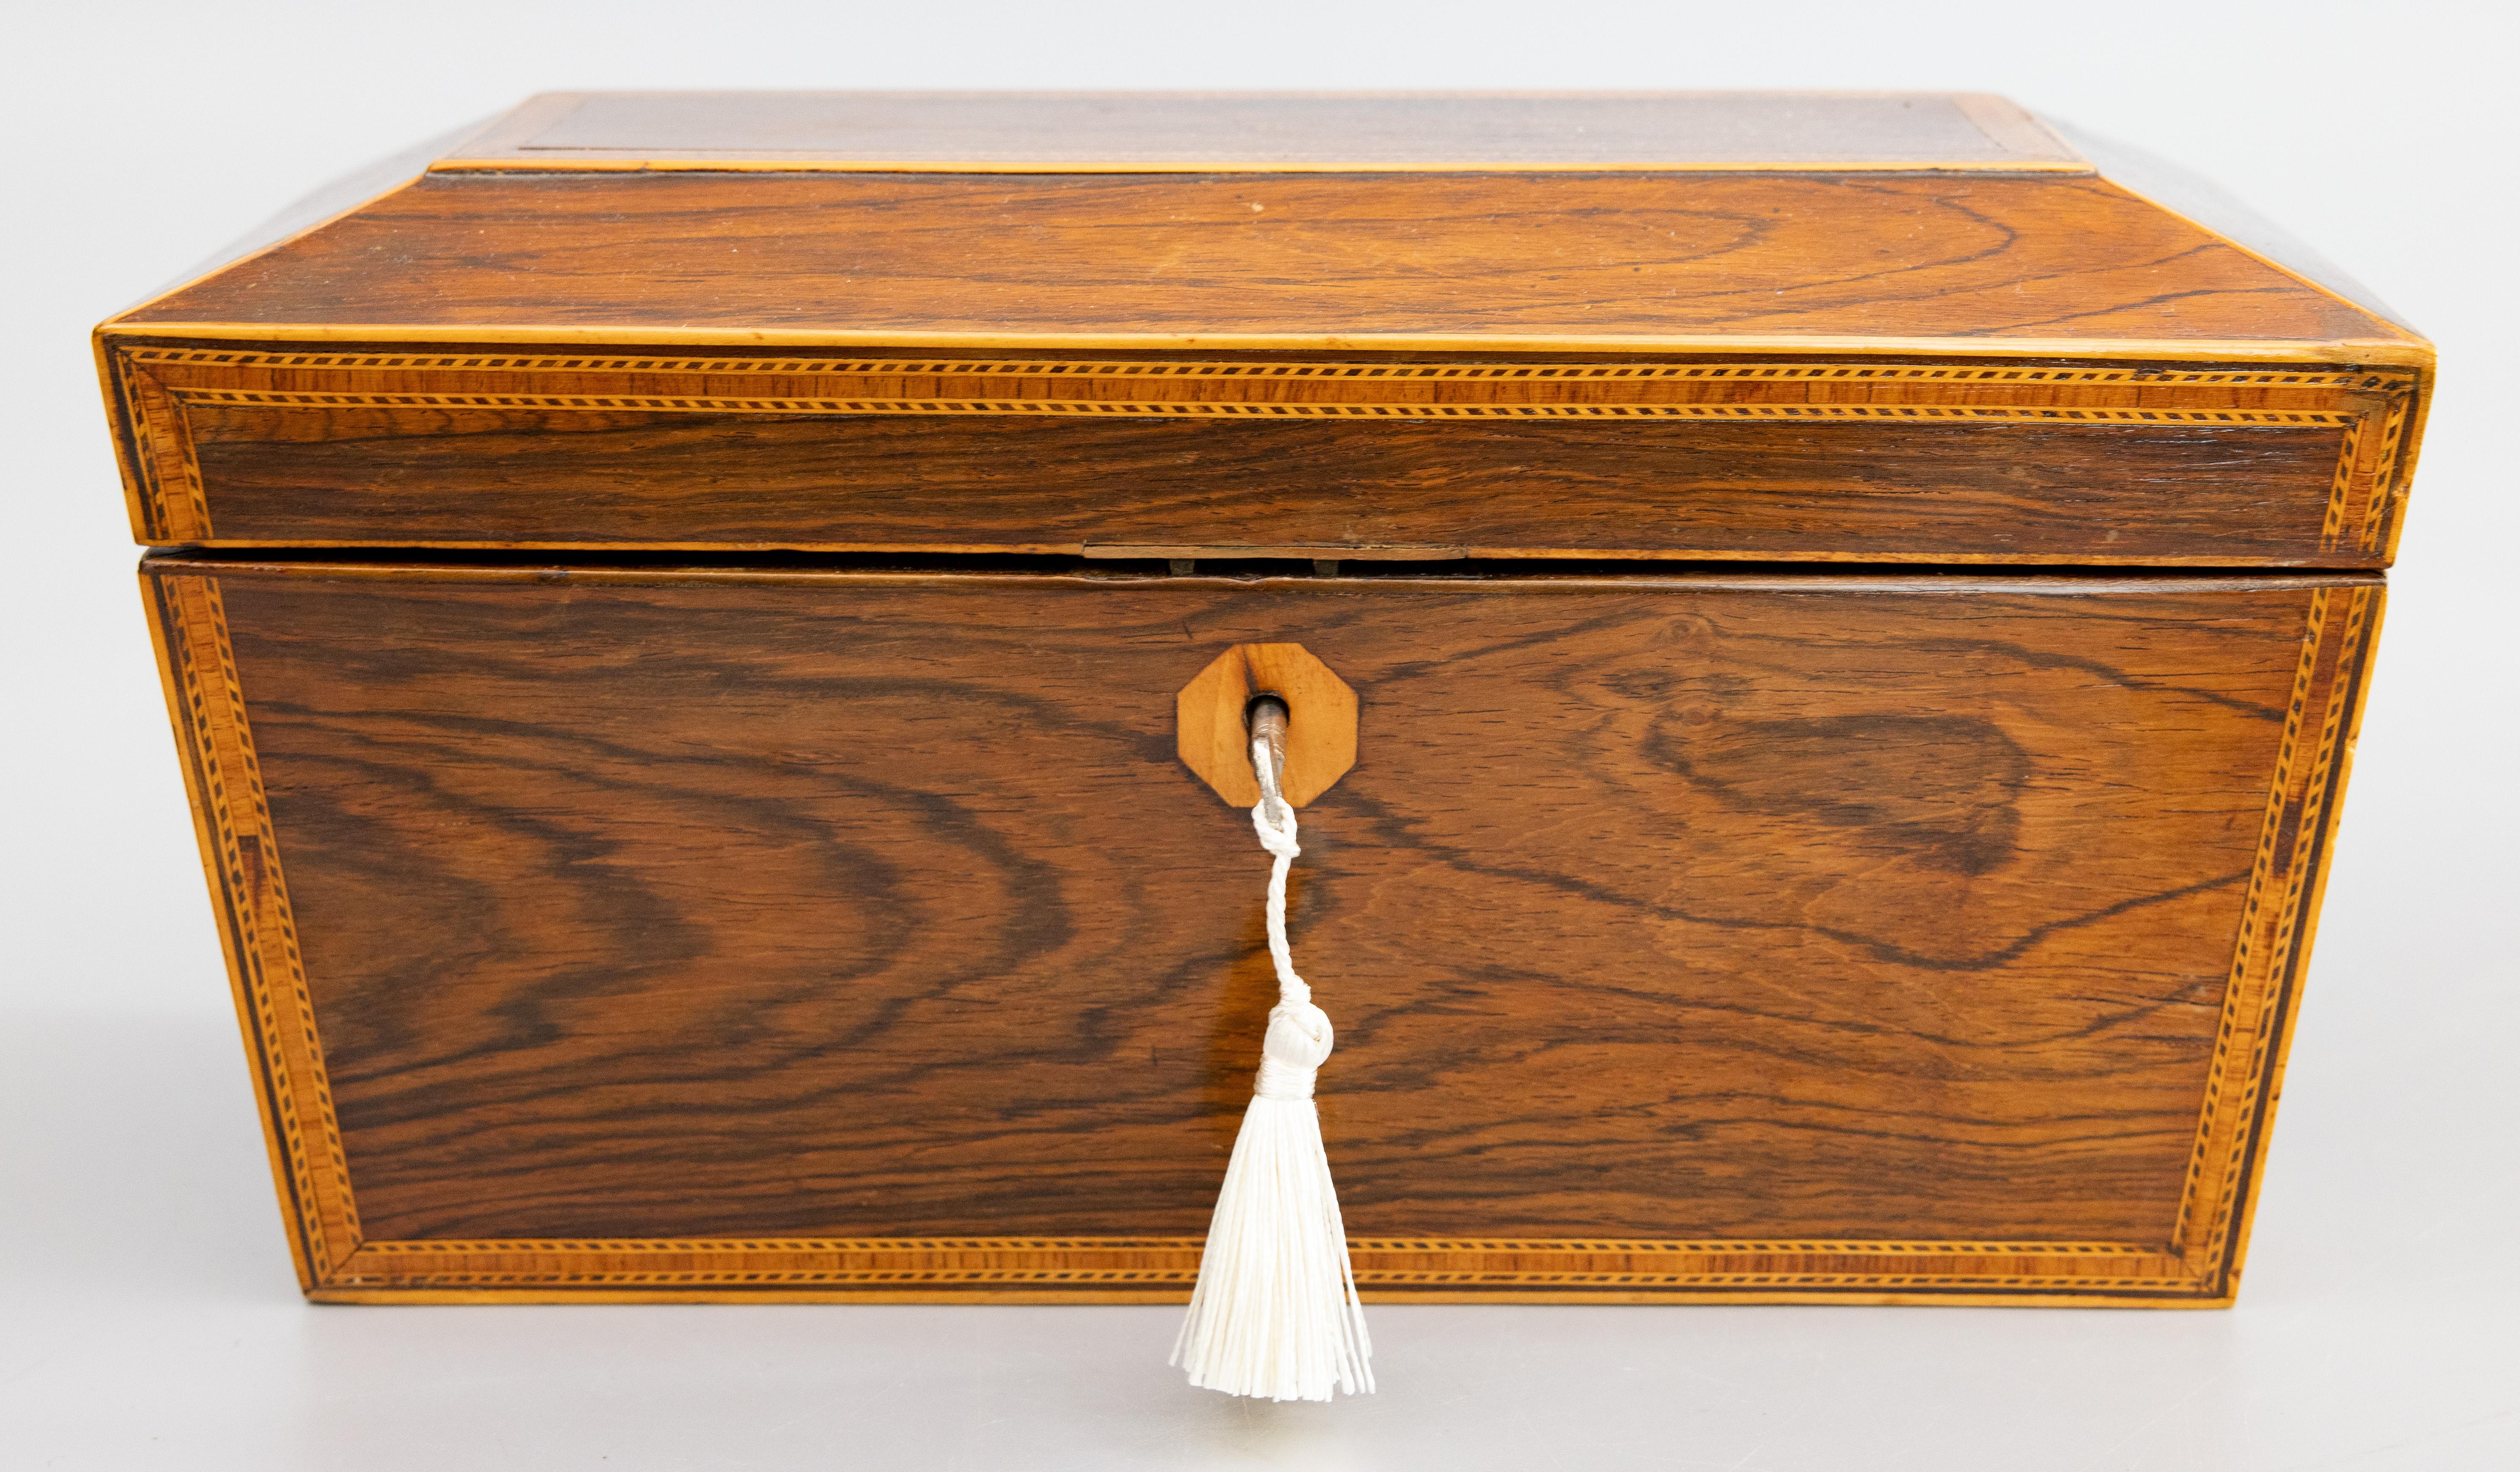 Superbe boîte à cercueils en bois de rose de style Régence anglaise, avec serrure et clé, vers 1850. Cette belle boîte ancienne a une belle forme de sarcophage accentuée par des bandes incrustées contrastantes et des poignées en anneau de lion en